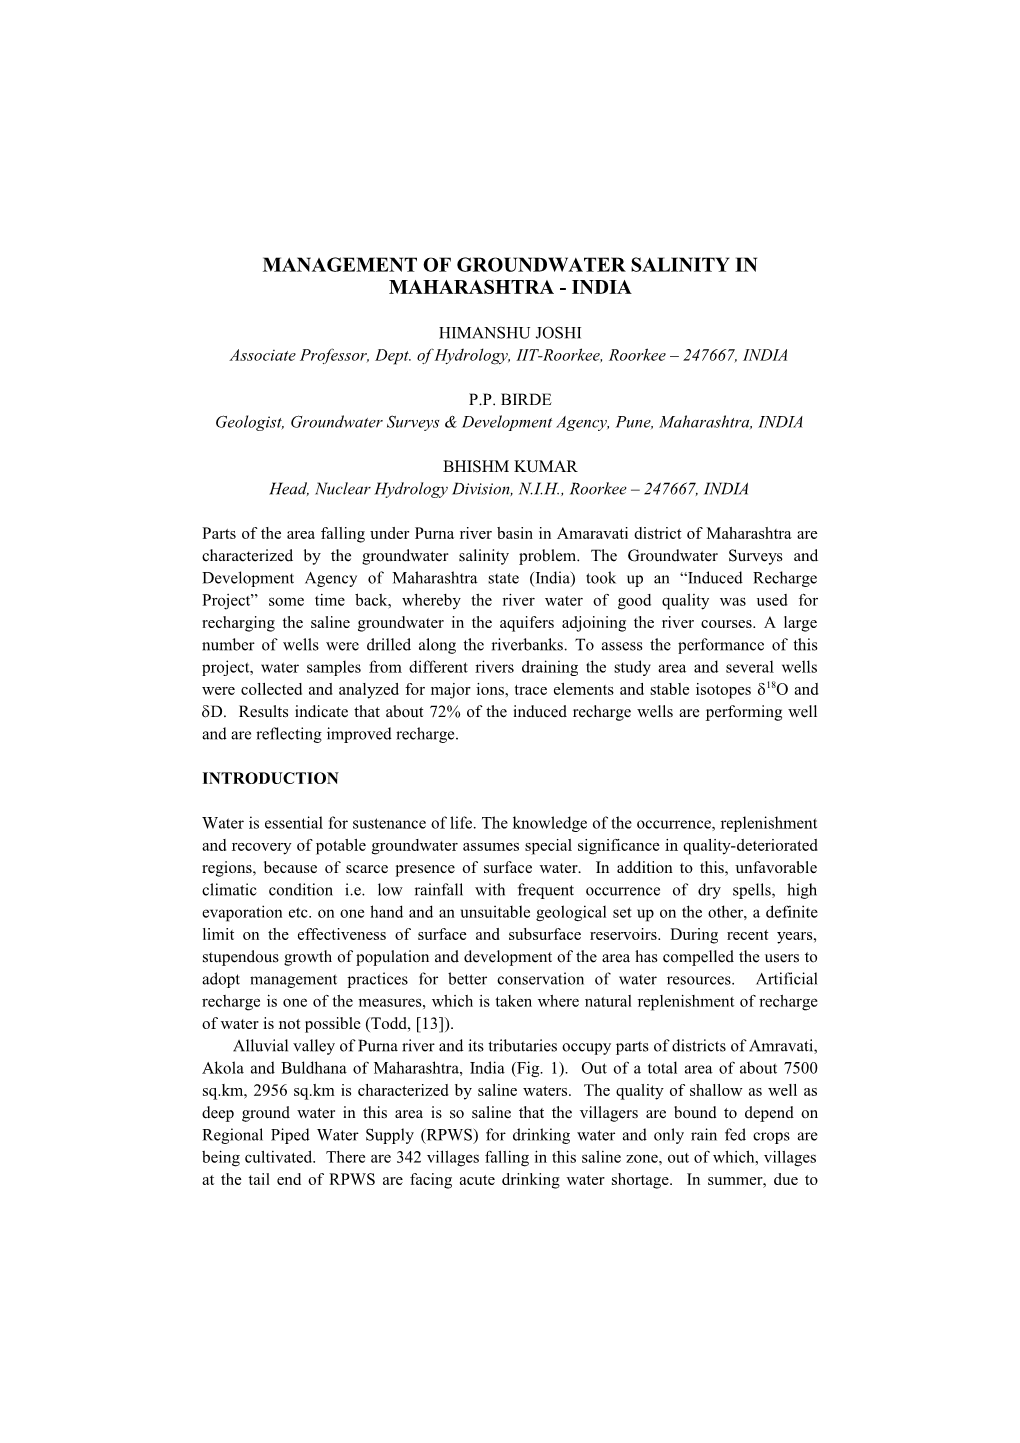 Management of Groundwater Salinity in Maharashtra - India